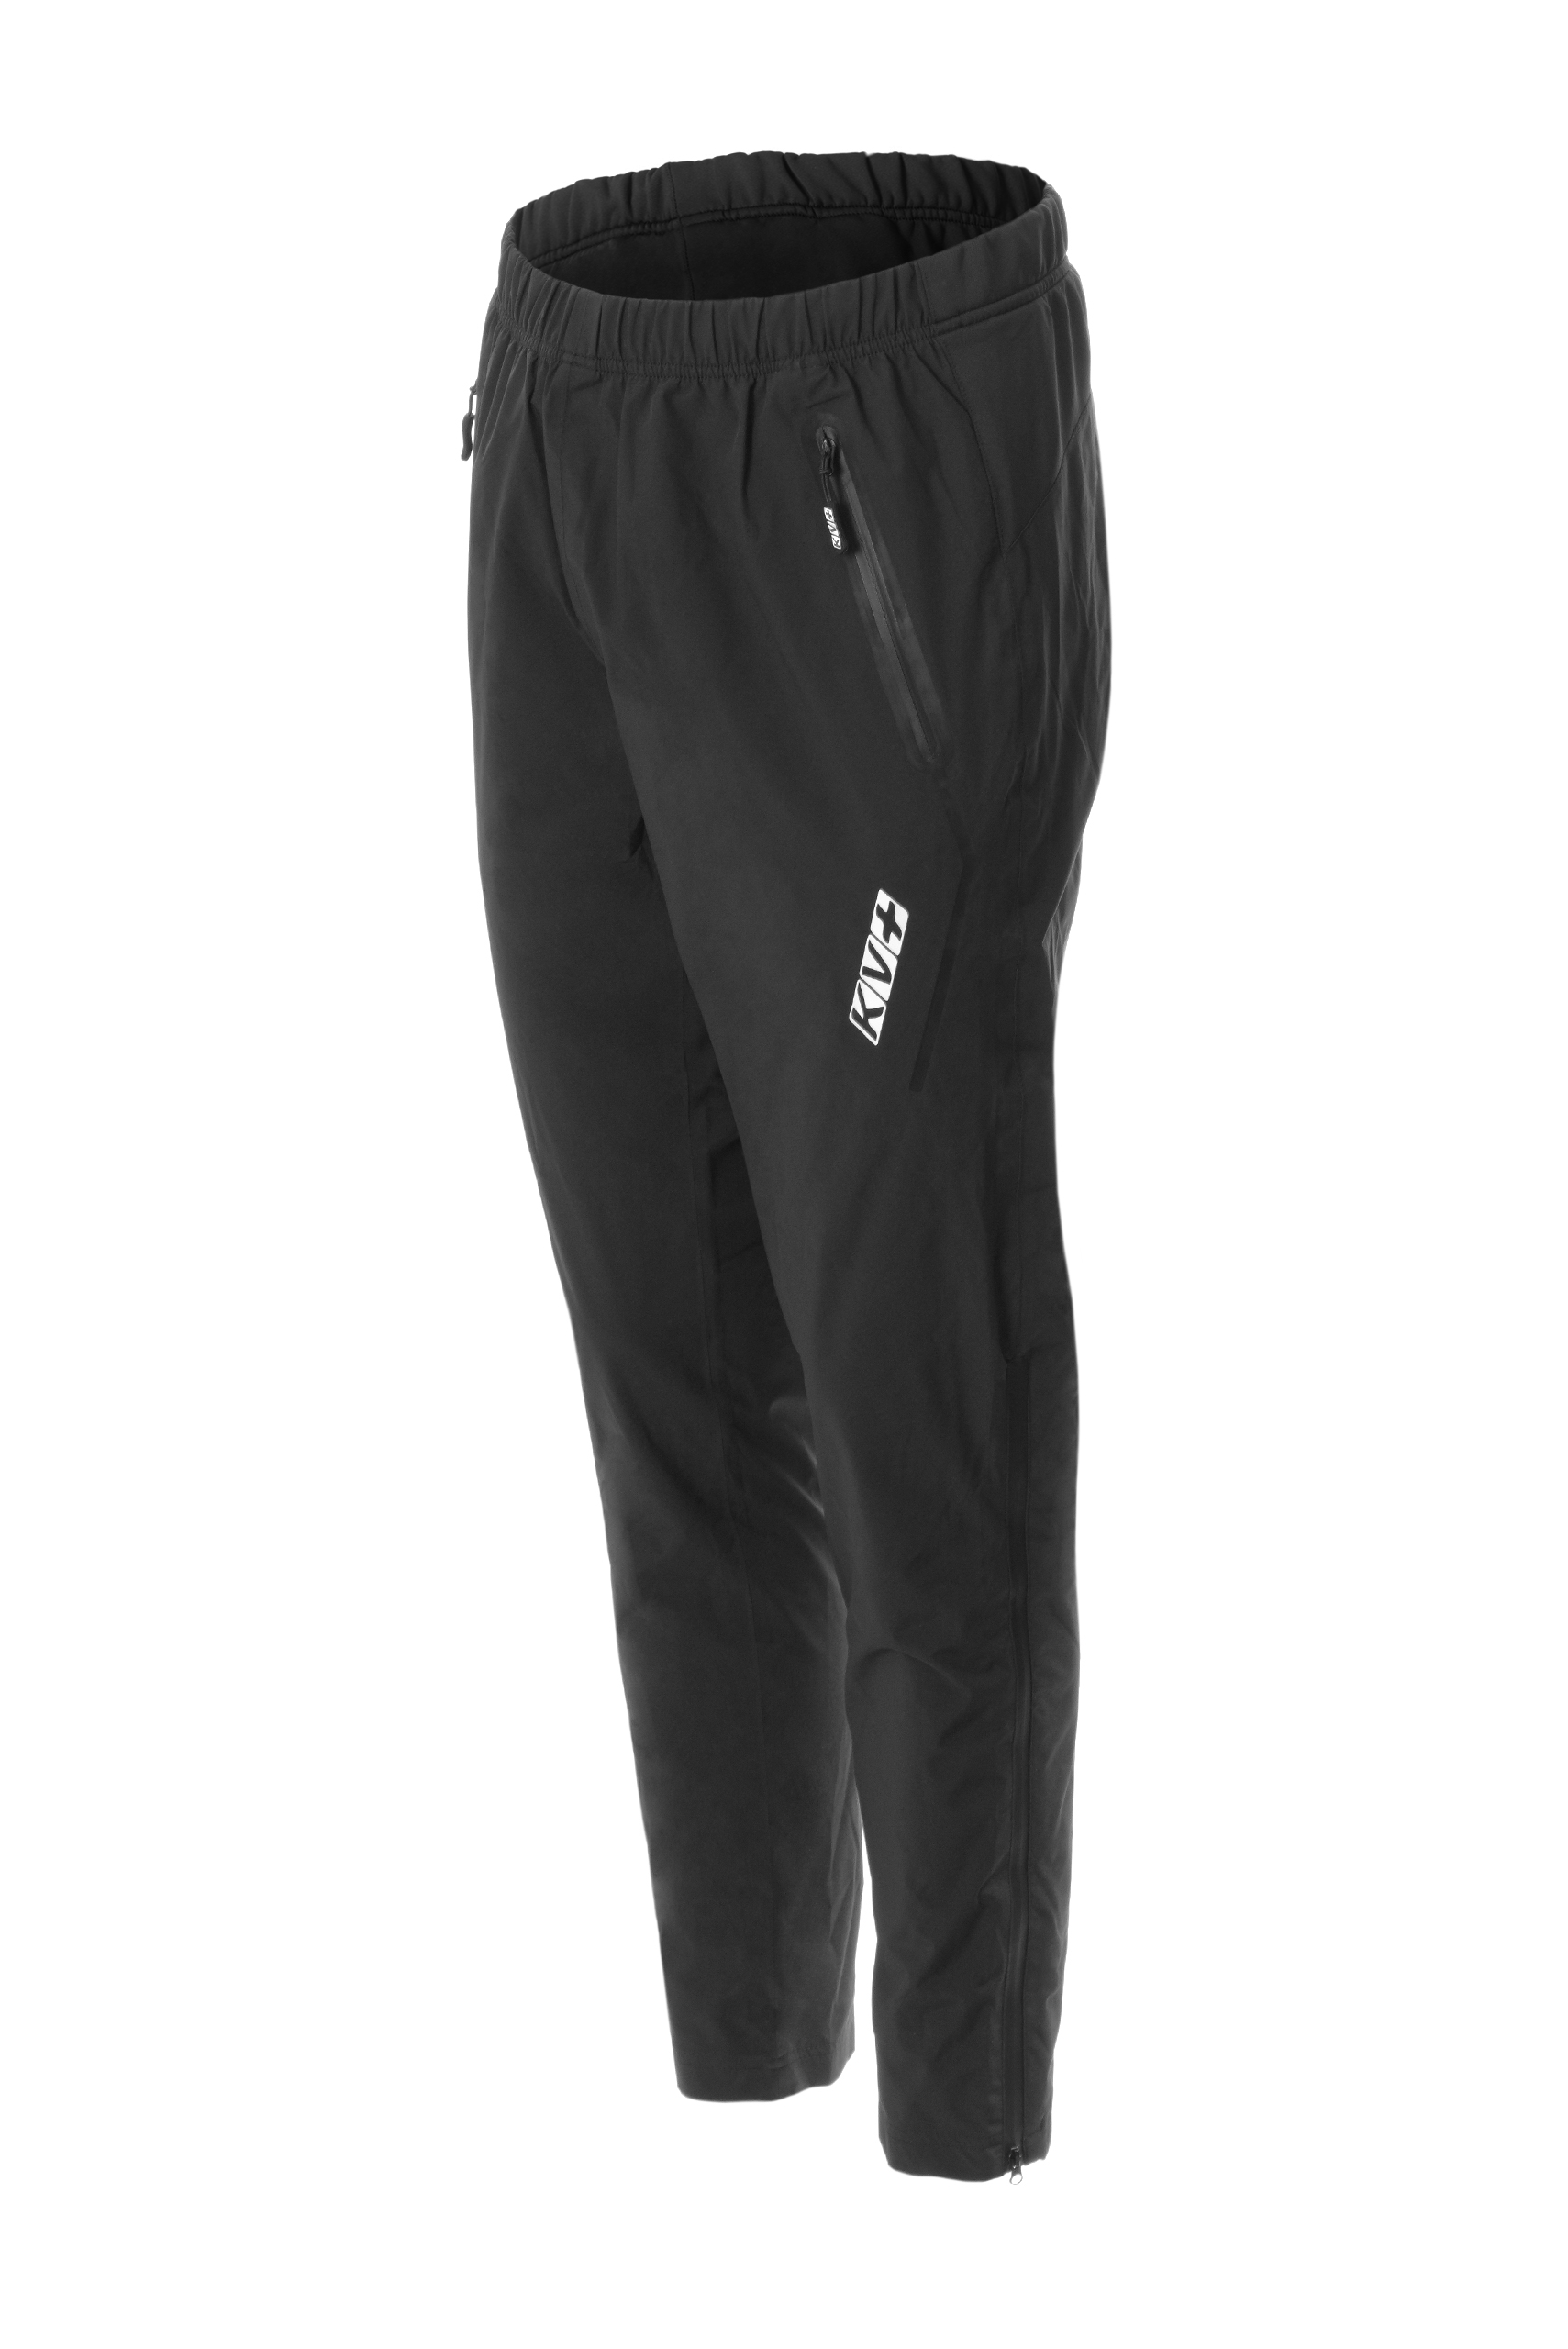 Спортивные брюки мужские KV+ IRELAND pants waterproof черные S